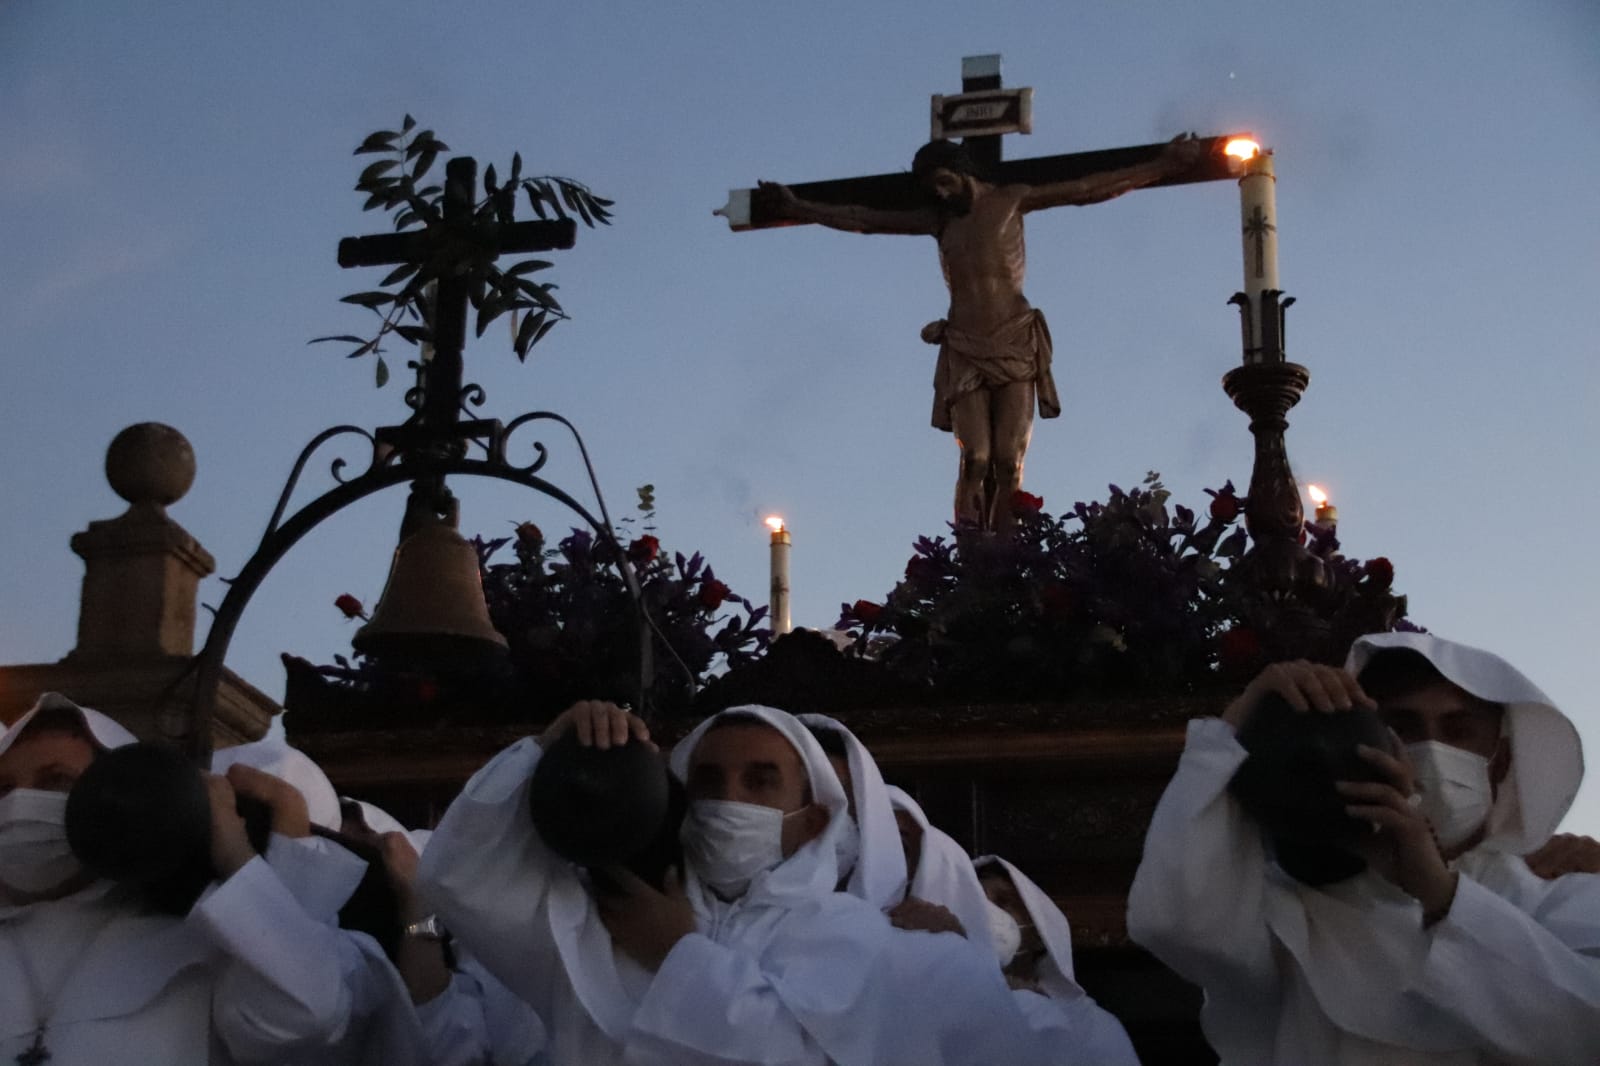  La procesión del Cristo del Amor y de la Paz ilumina a los salmantinos este Jueves Santo